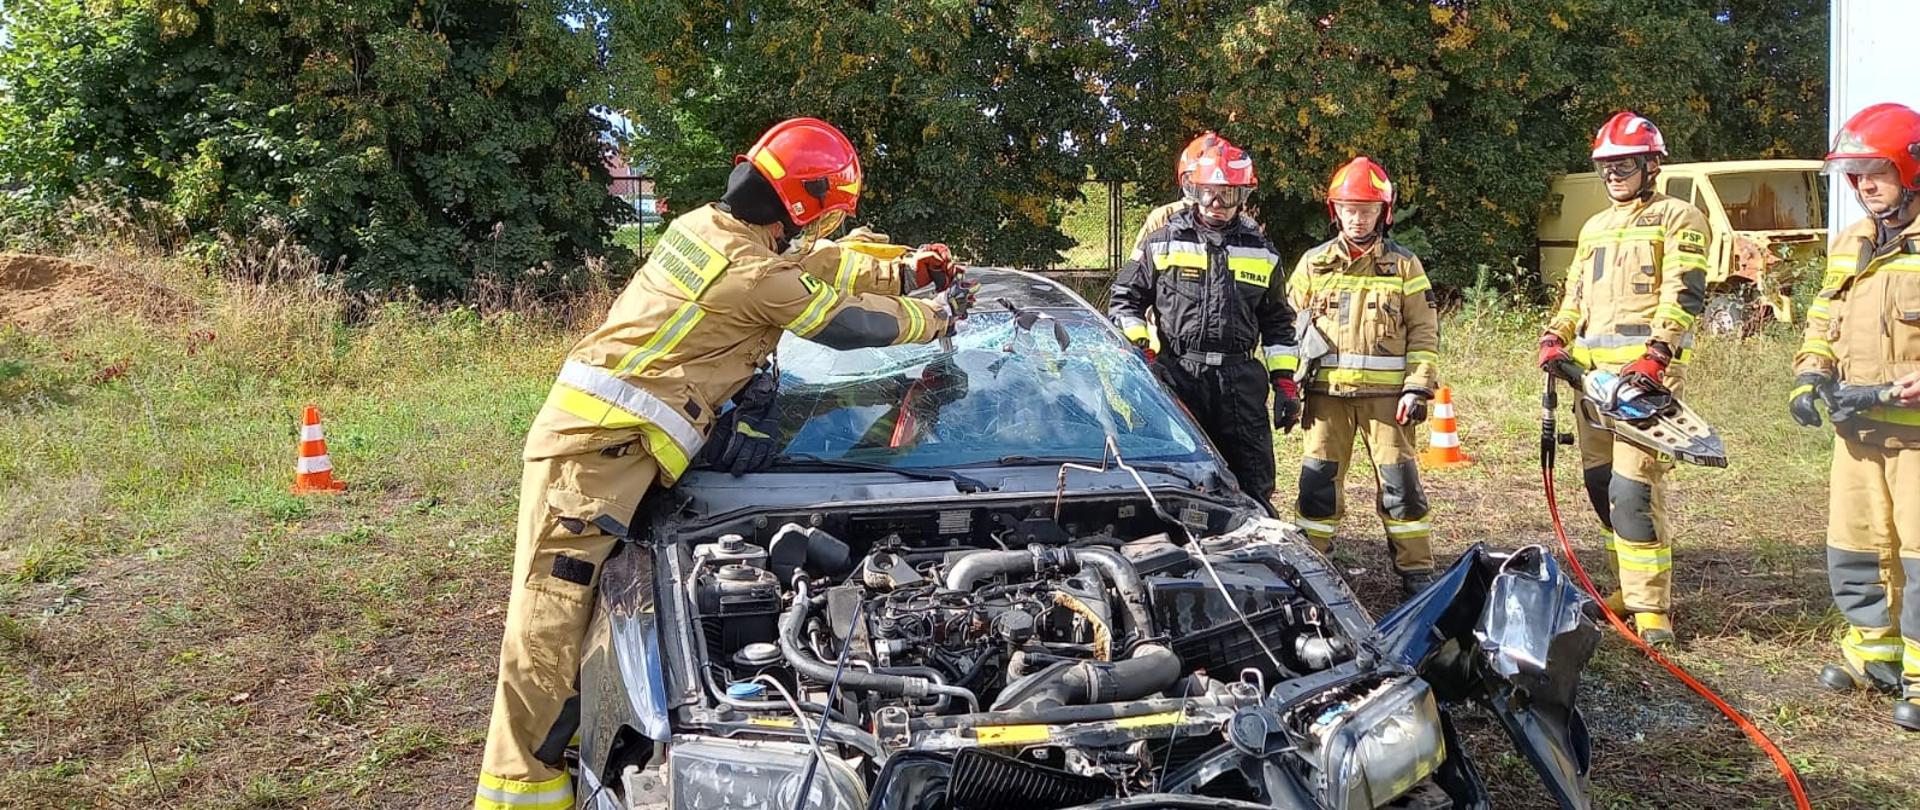 Strażak w ubraniu specjalnym rozpija przednią szybę inni strażacy stoją obok jeden ze strażaków trzyma sprzęt specjalistyczny.